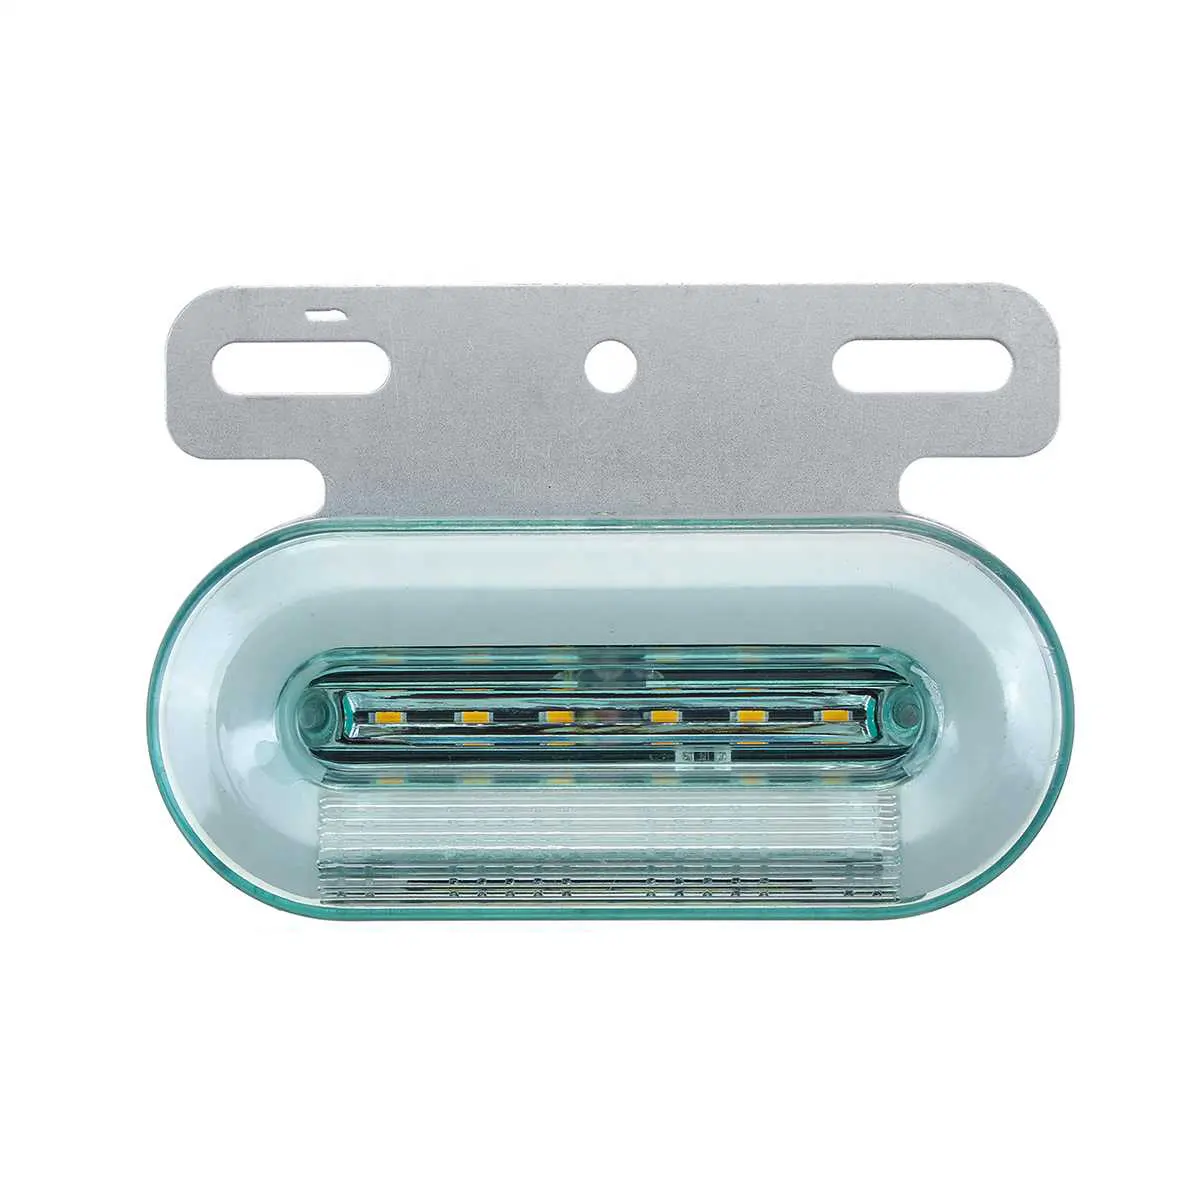 Universal LED Side MARKER Light สำหรับรถพ่วงรถบรรทุก VANS กับวงเล็บเหล็ก